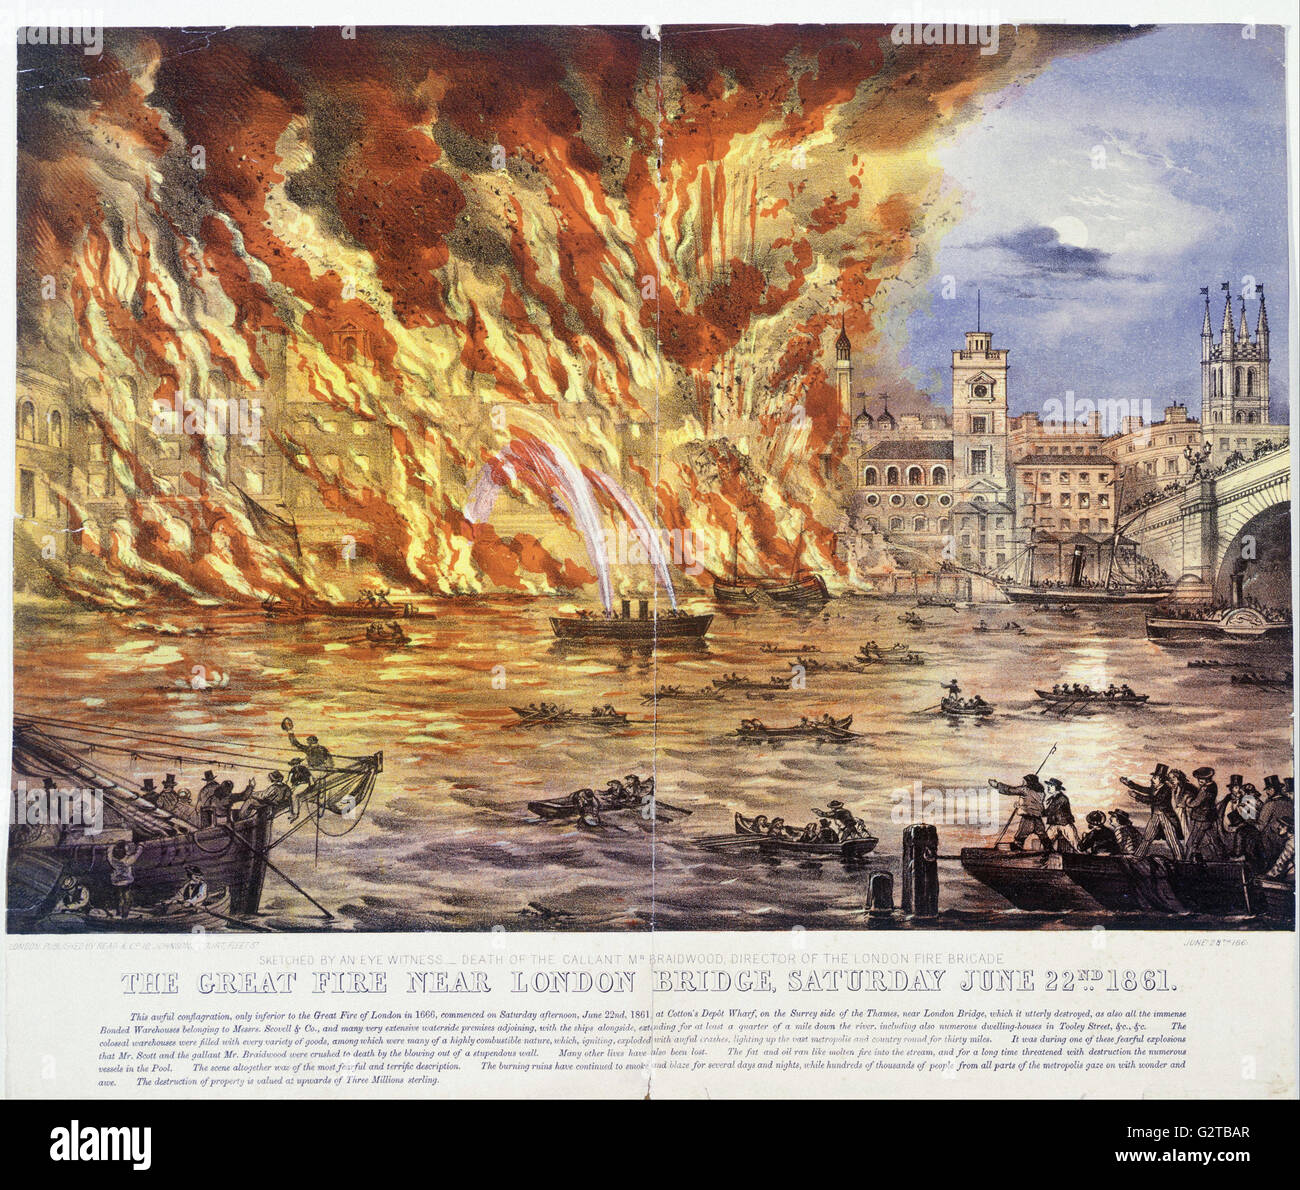 Lese- und Unternehmens - print; farbige Lithographie - das große Feuer in der Nähe von London Bridge, Samstag, 22. Juni 1861- Stockfoto